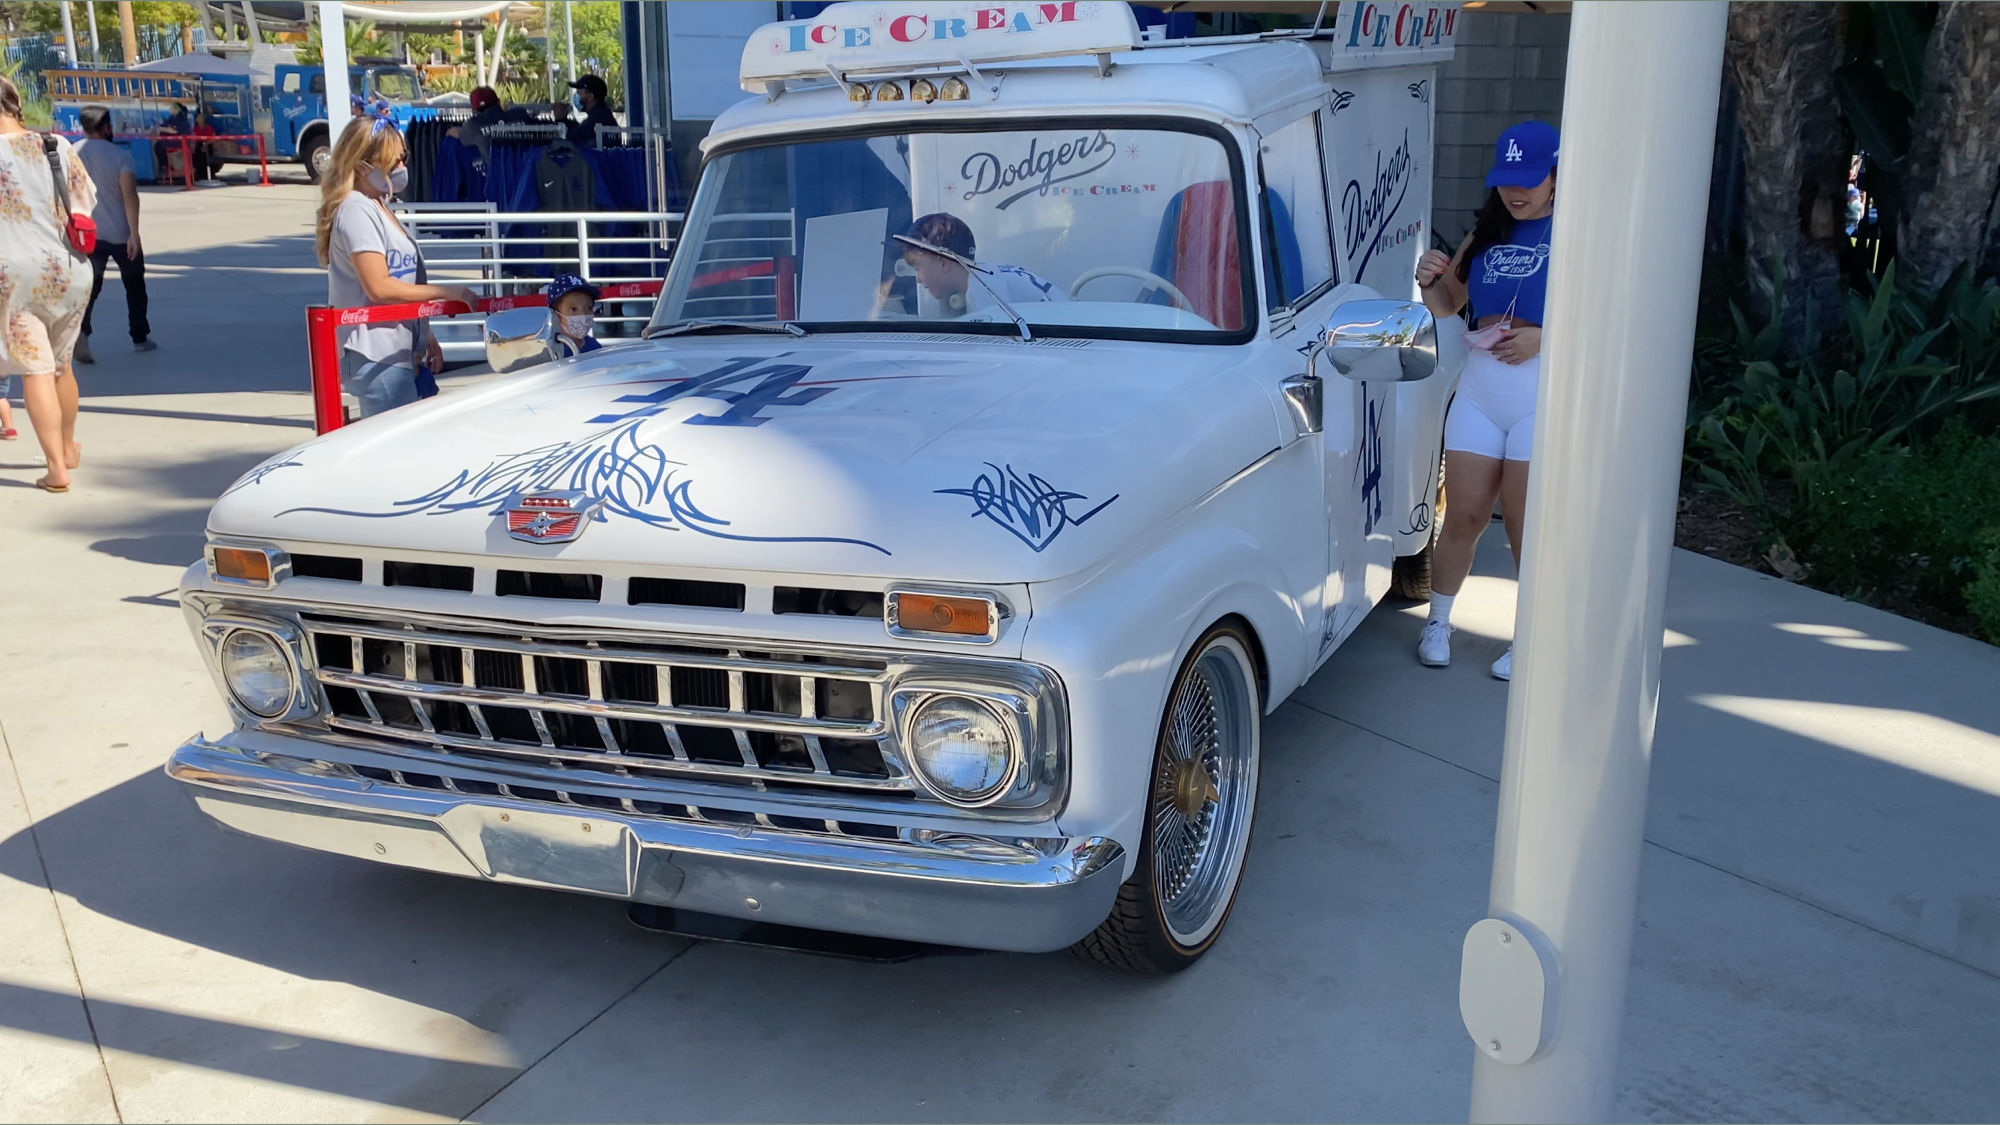 Dodger Stadium Ice Cream Truck